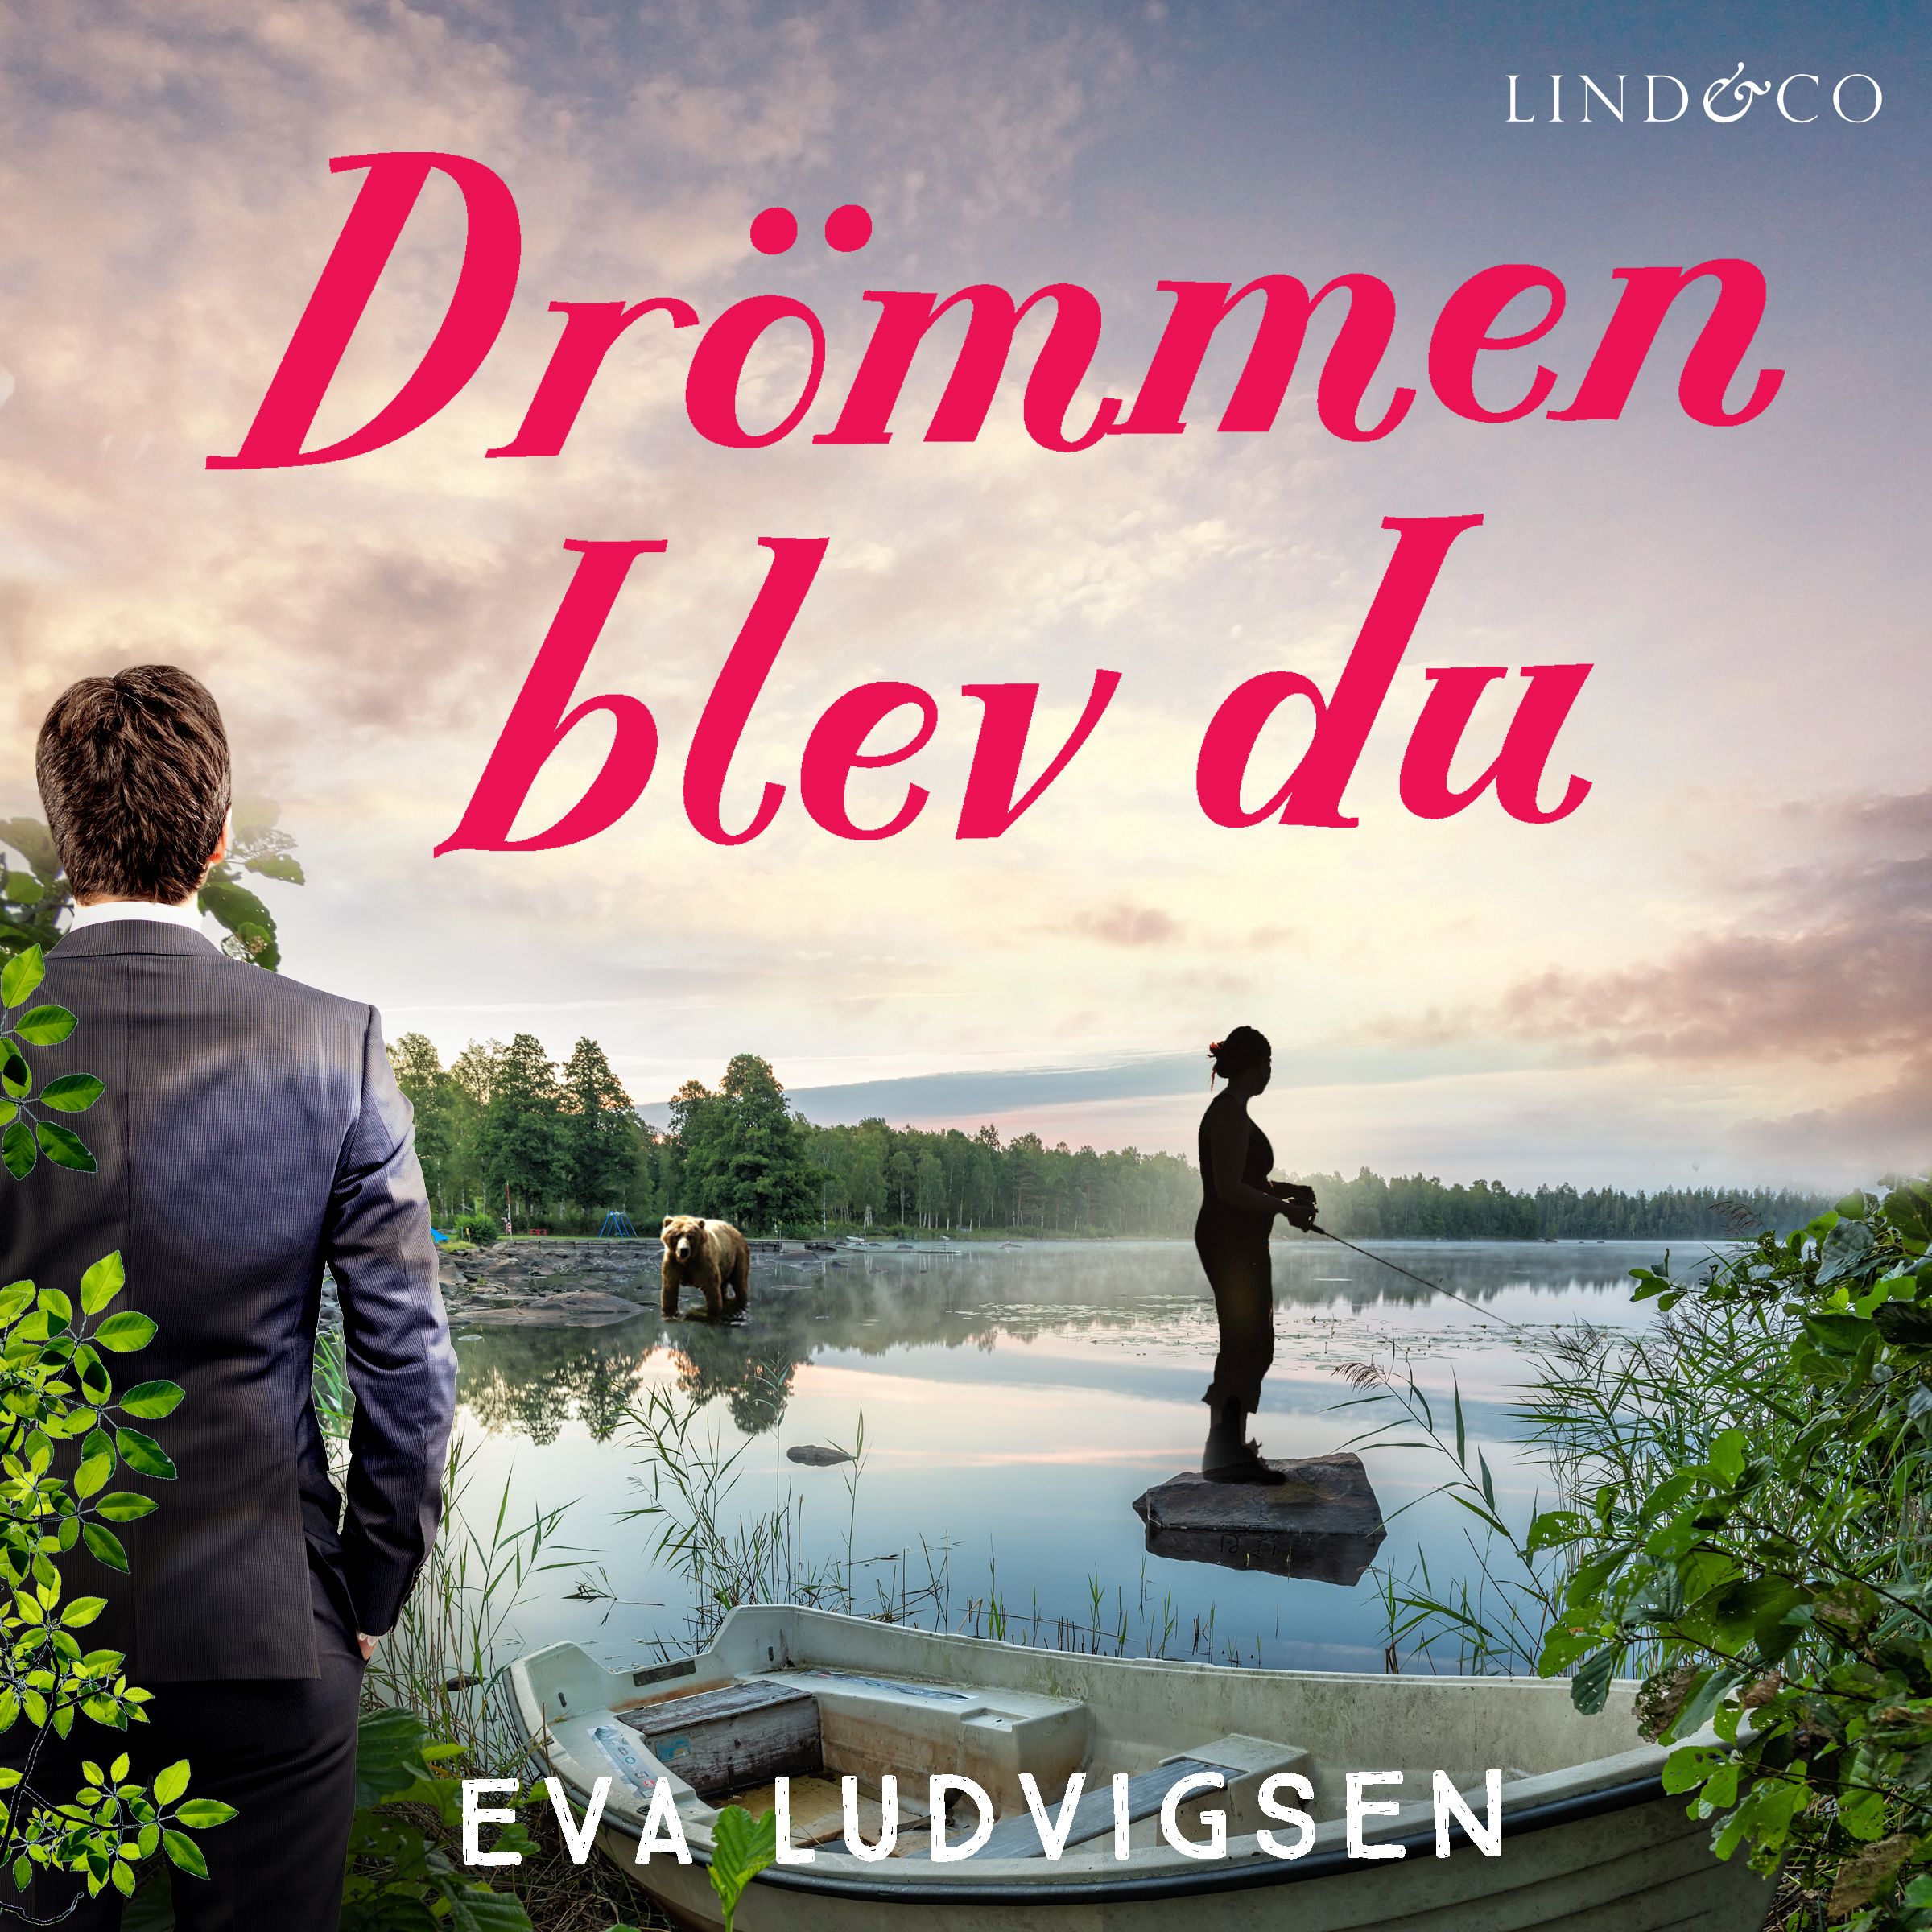 Drömmen blev du, audiobook by Eva Ludvigsen